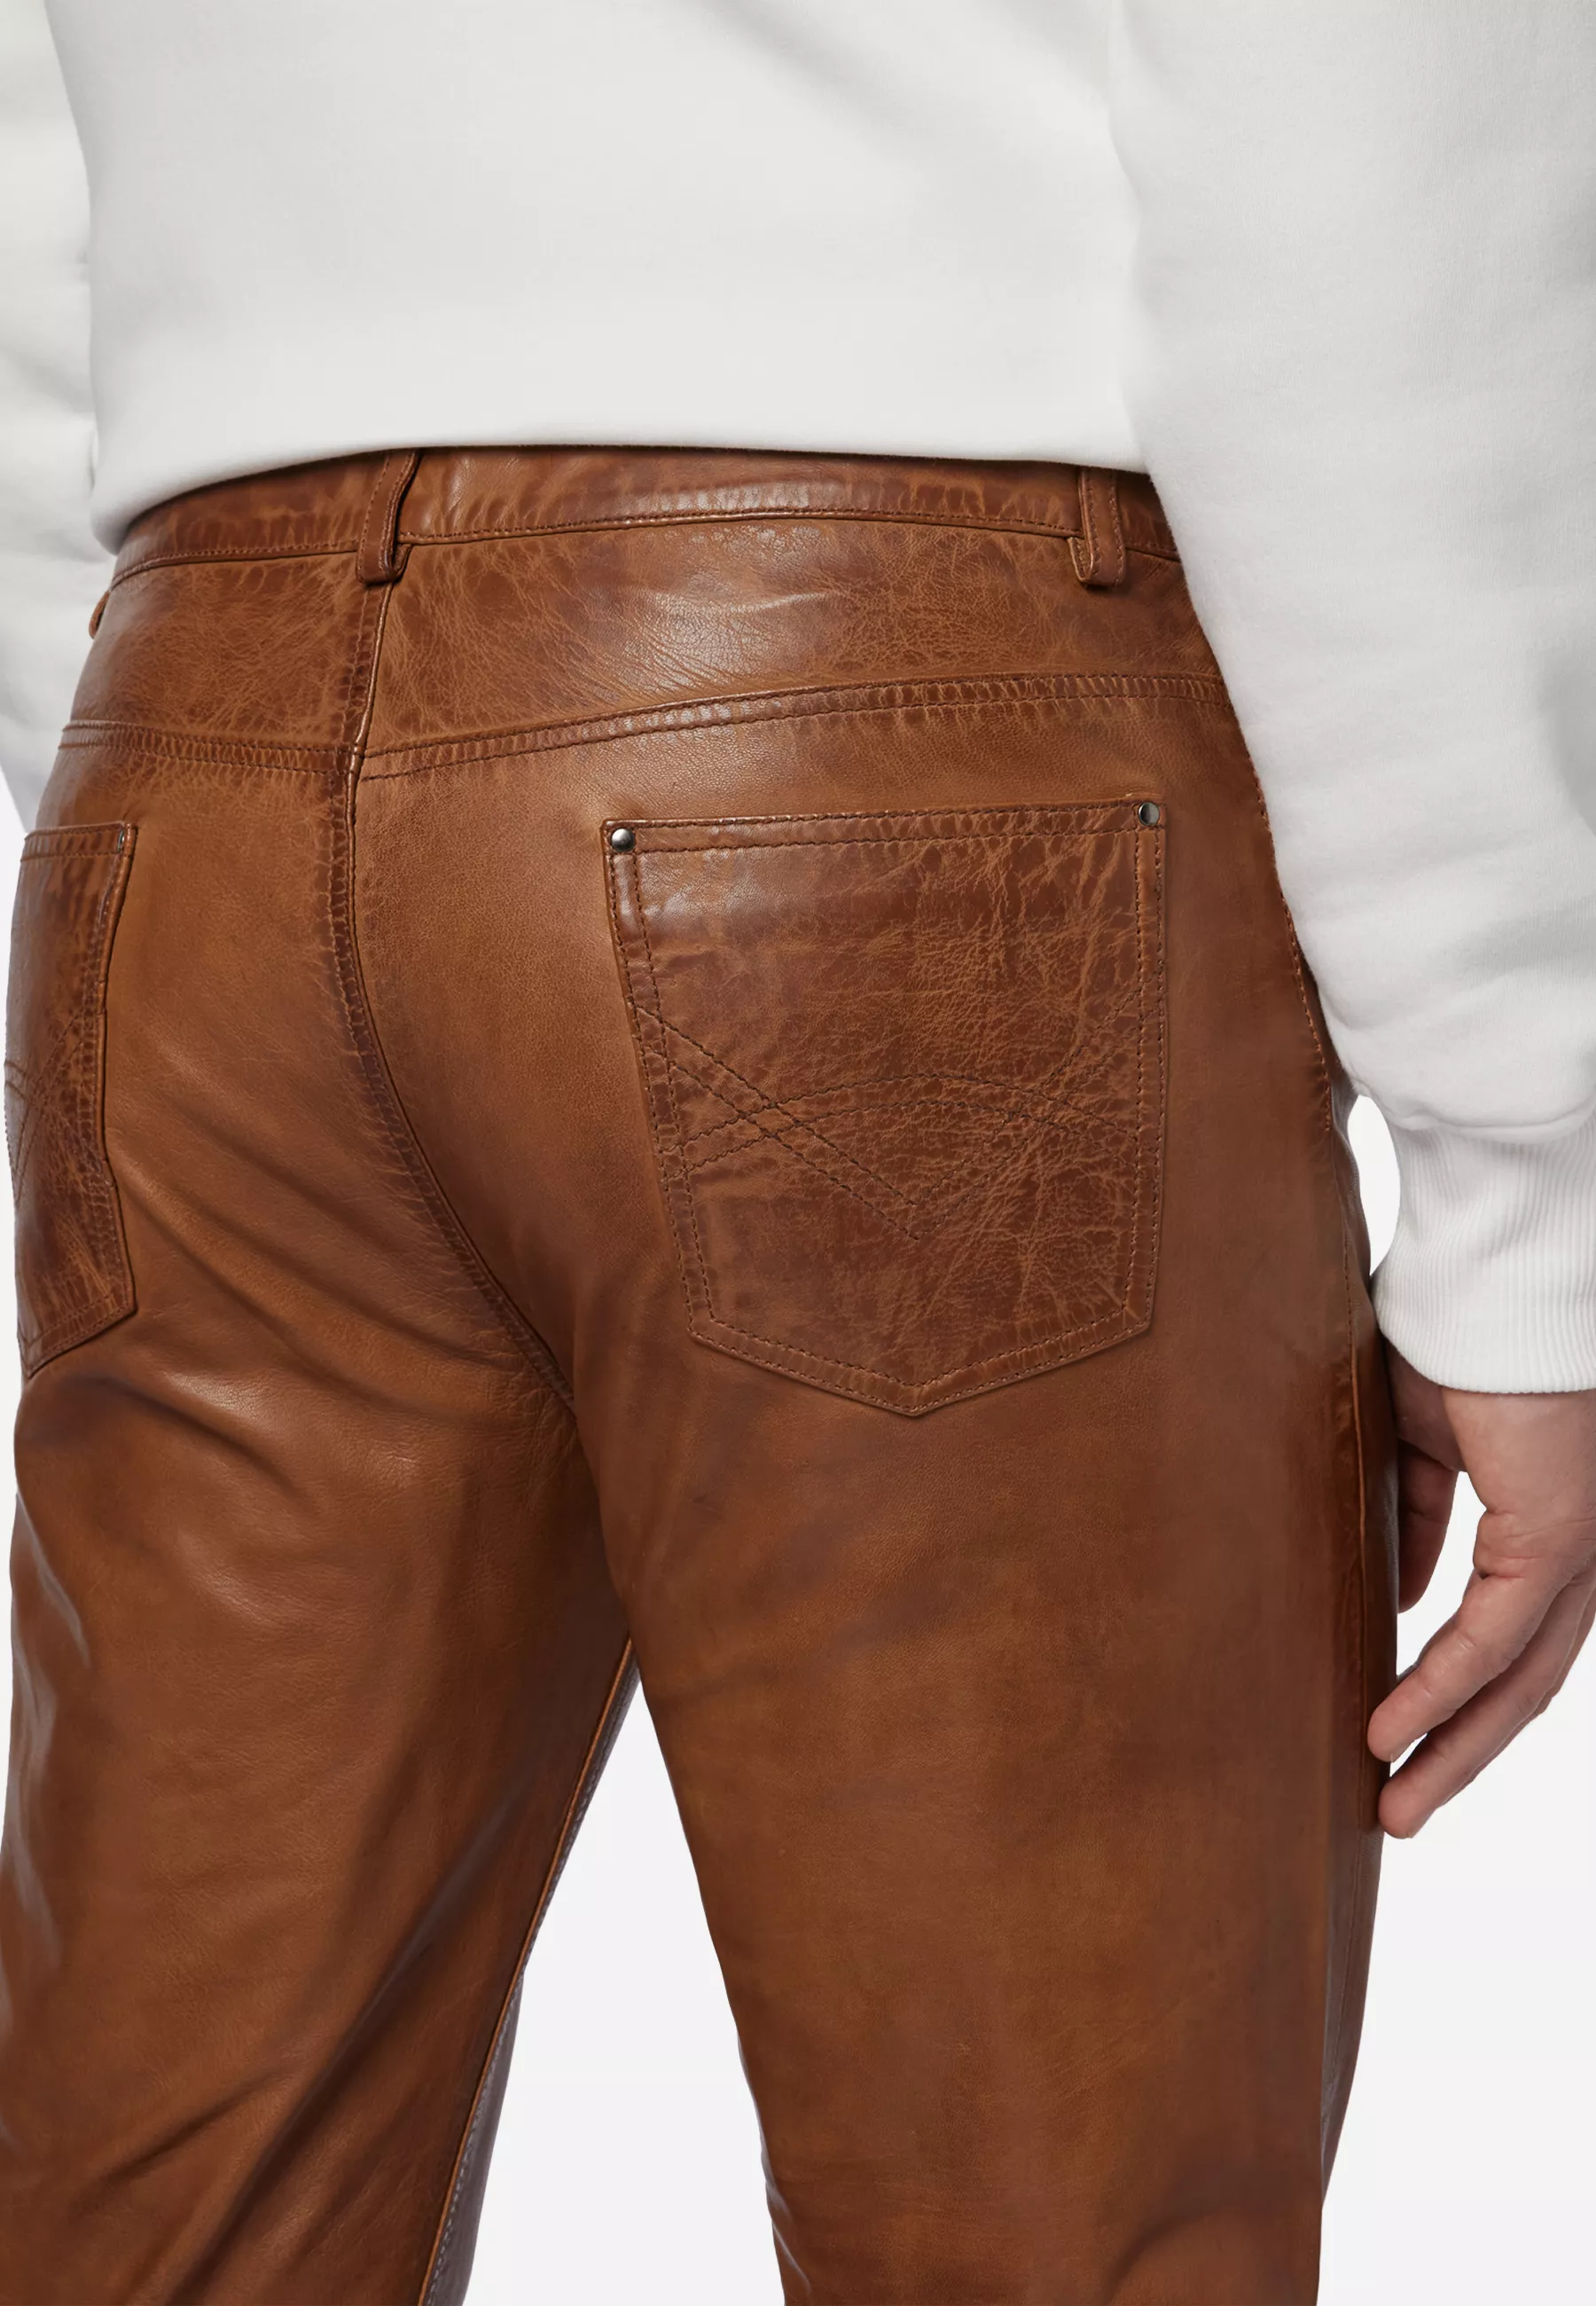 Herren Lederhose Trant Pant in Cognac von Ricano, Detailansicht Taschen am Model